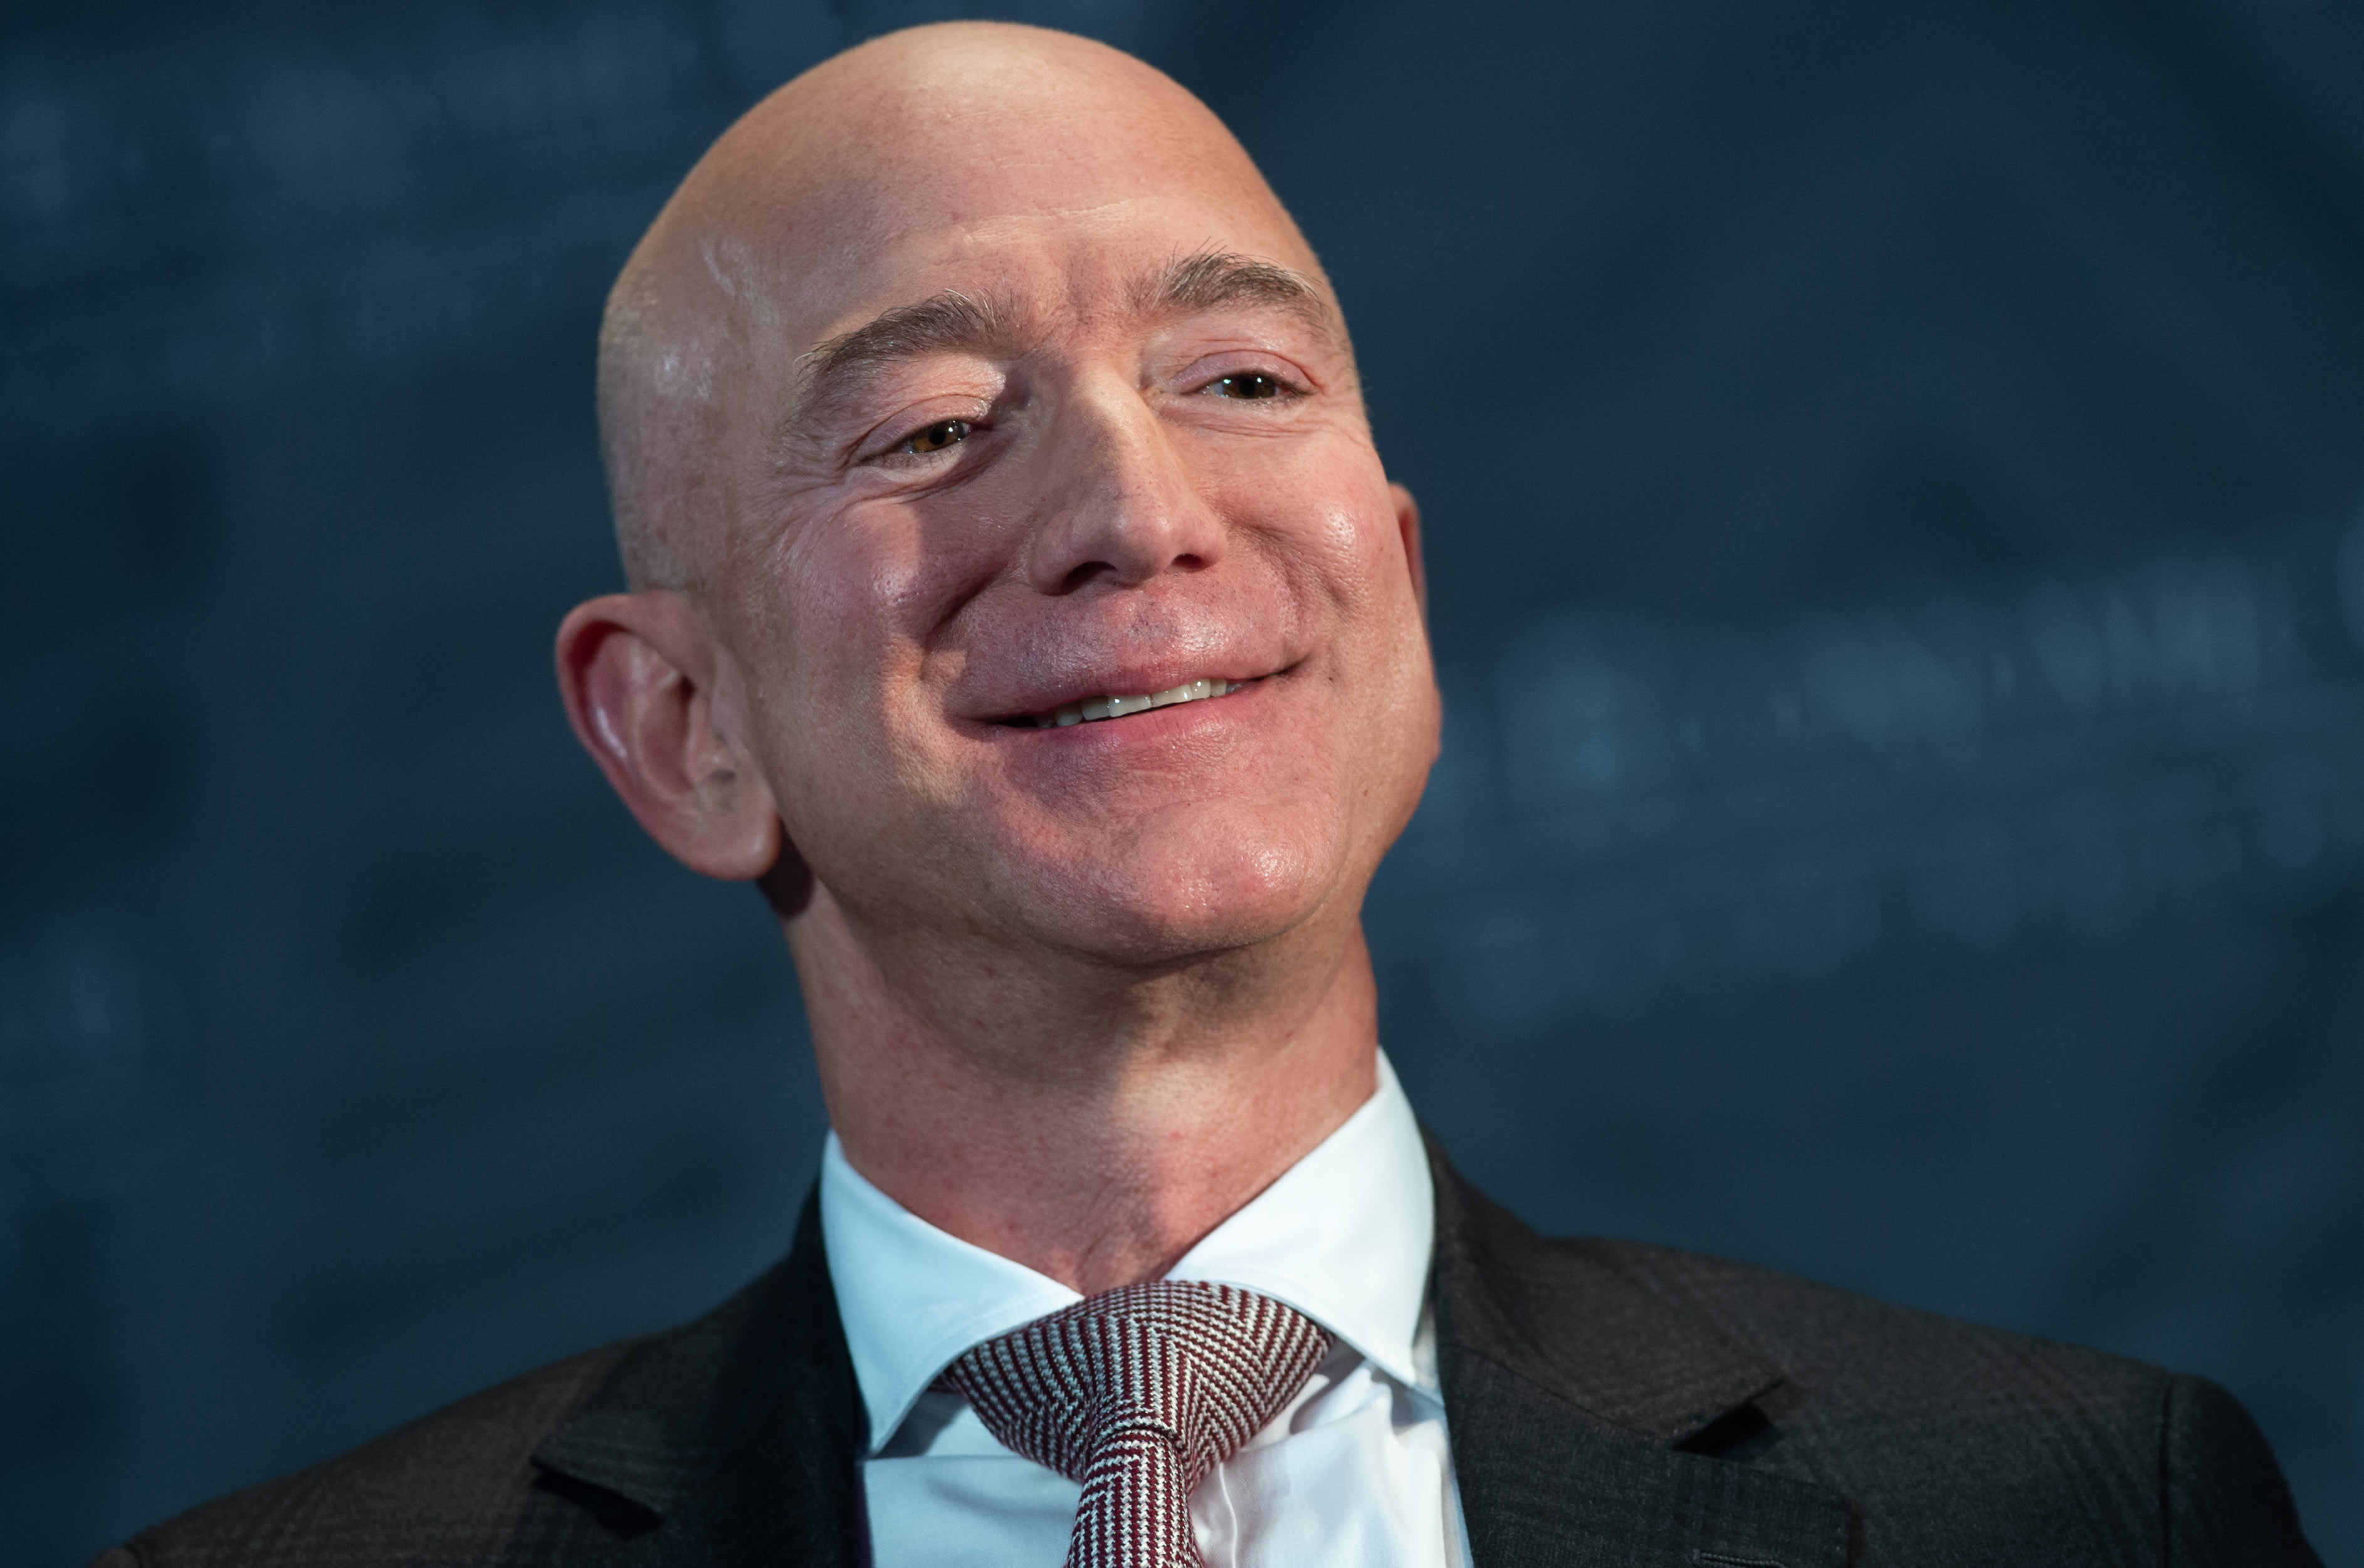 Amazon to overtake Walmart as largest U.S. retailer in 2022 — JPMorgan